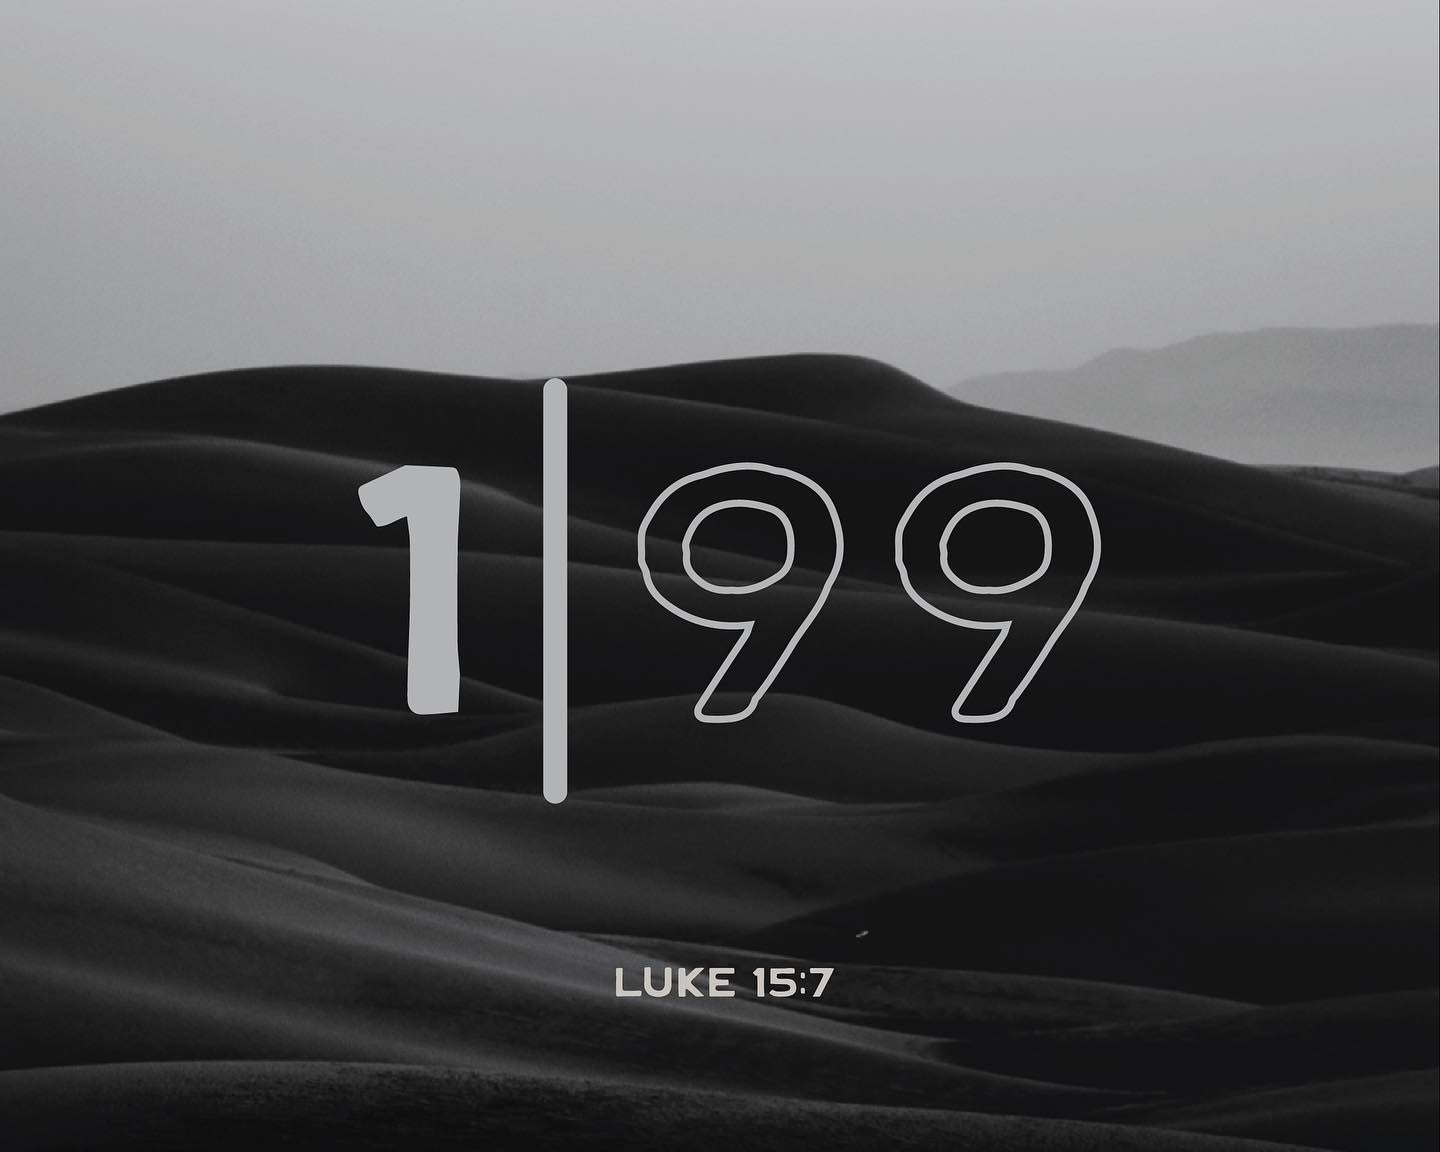 Luke 15:7 (JOY | Week 1)